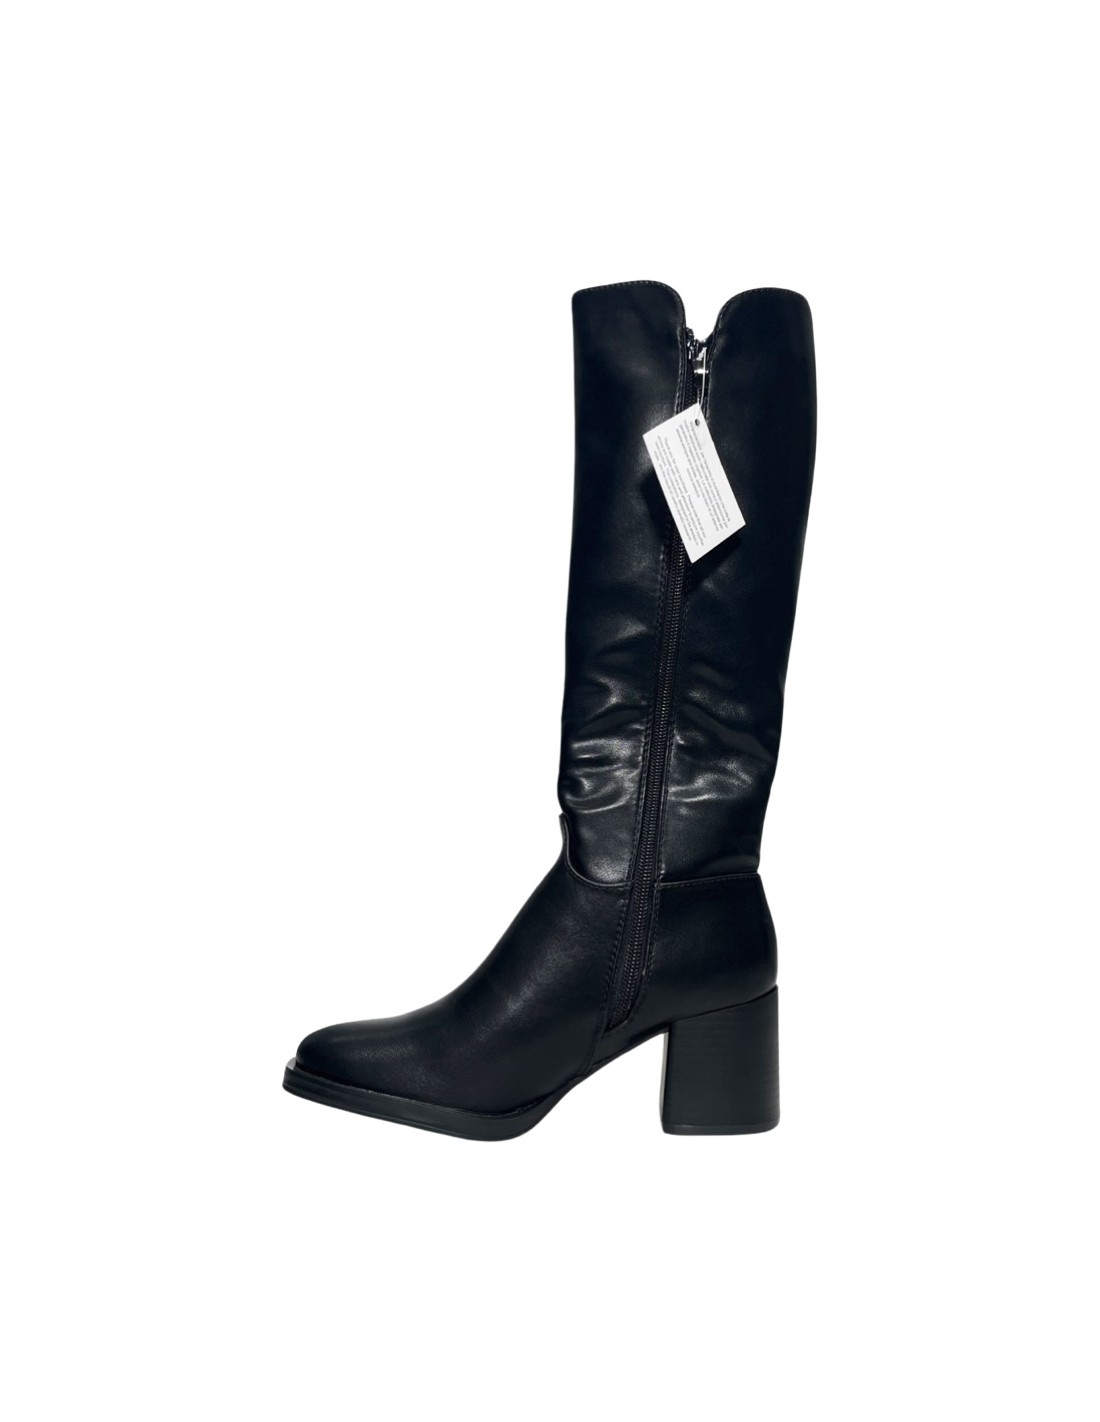 KEYS K-8583 stivali donna con tacco in pelle nero Donna Taglia 41